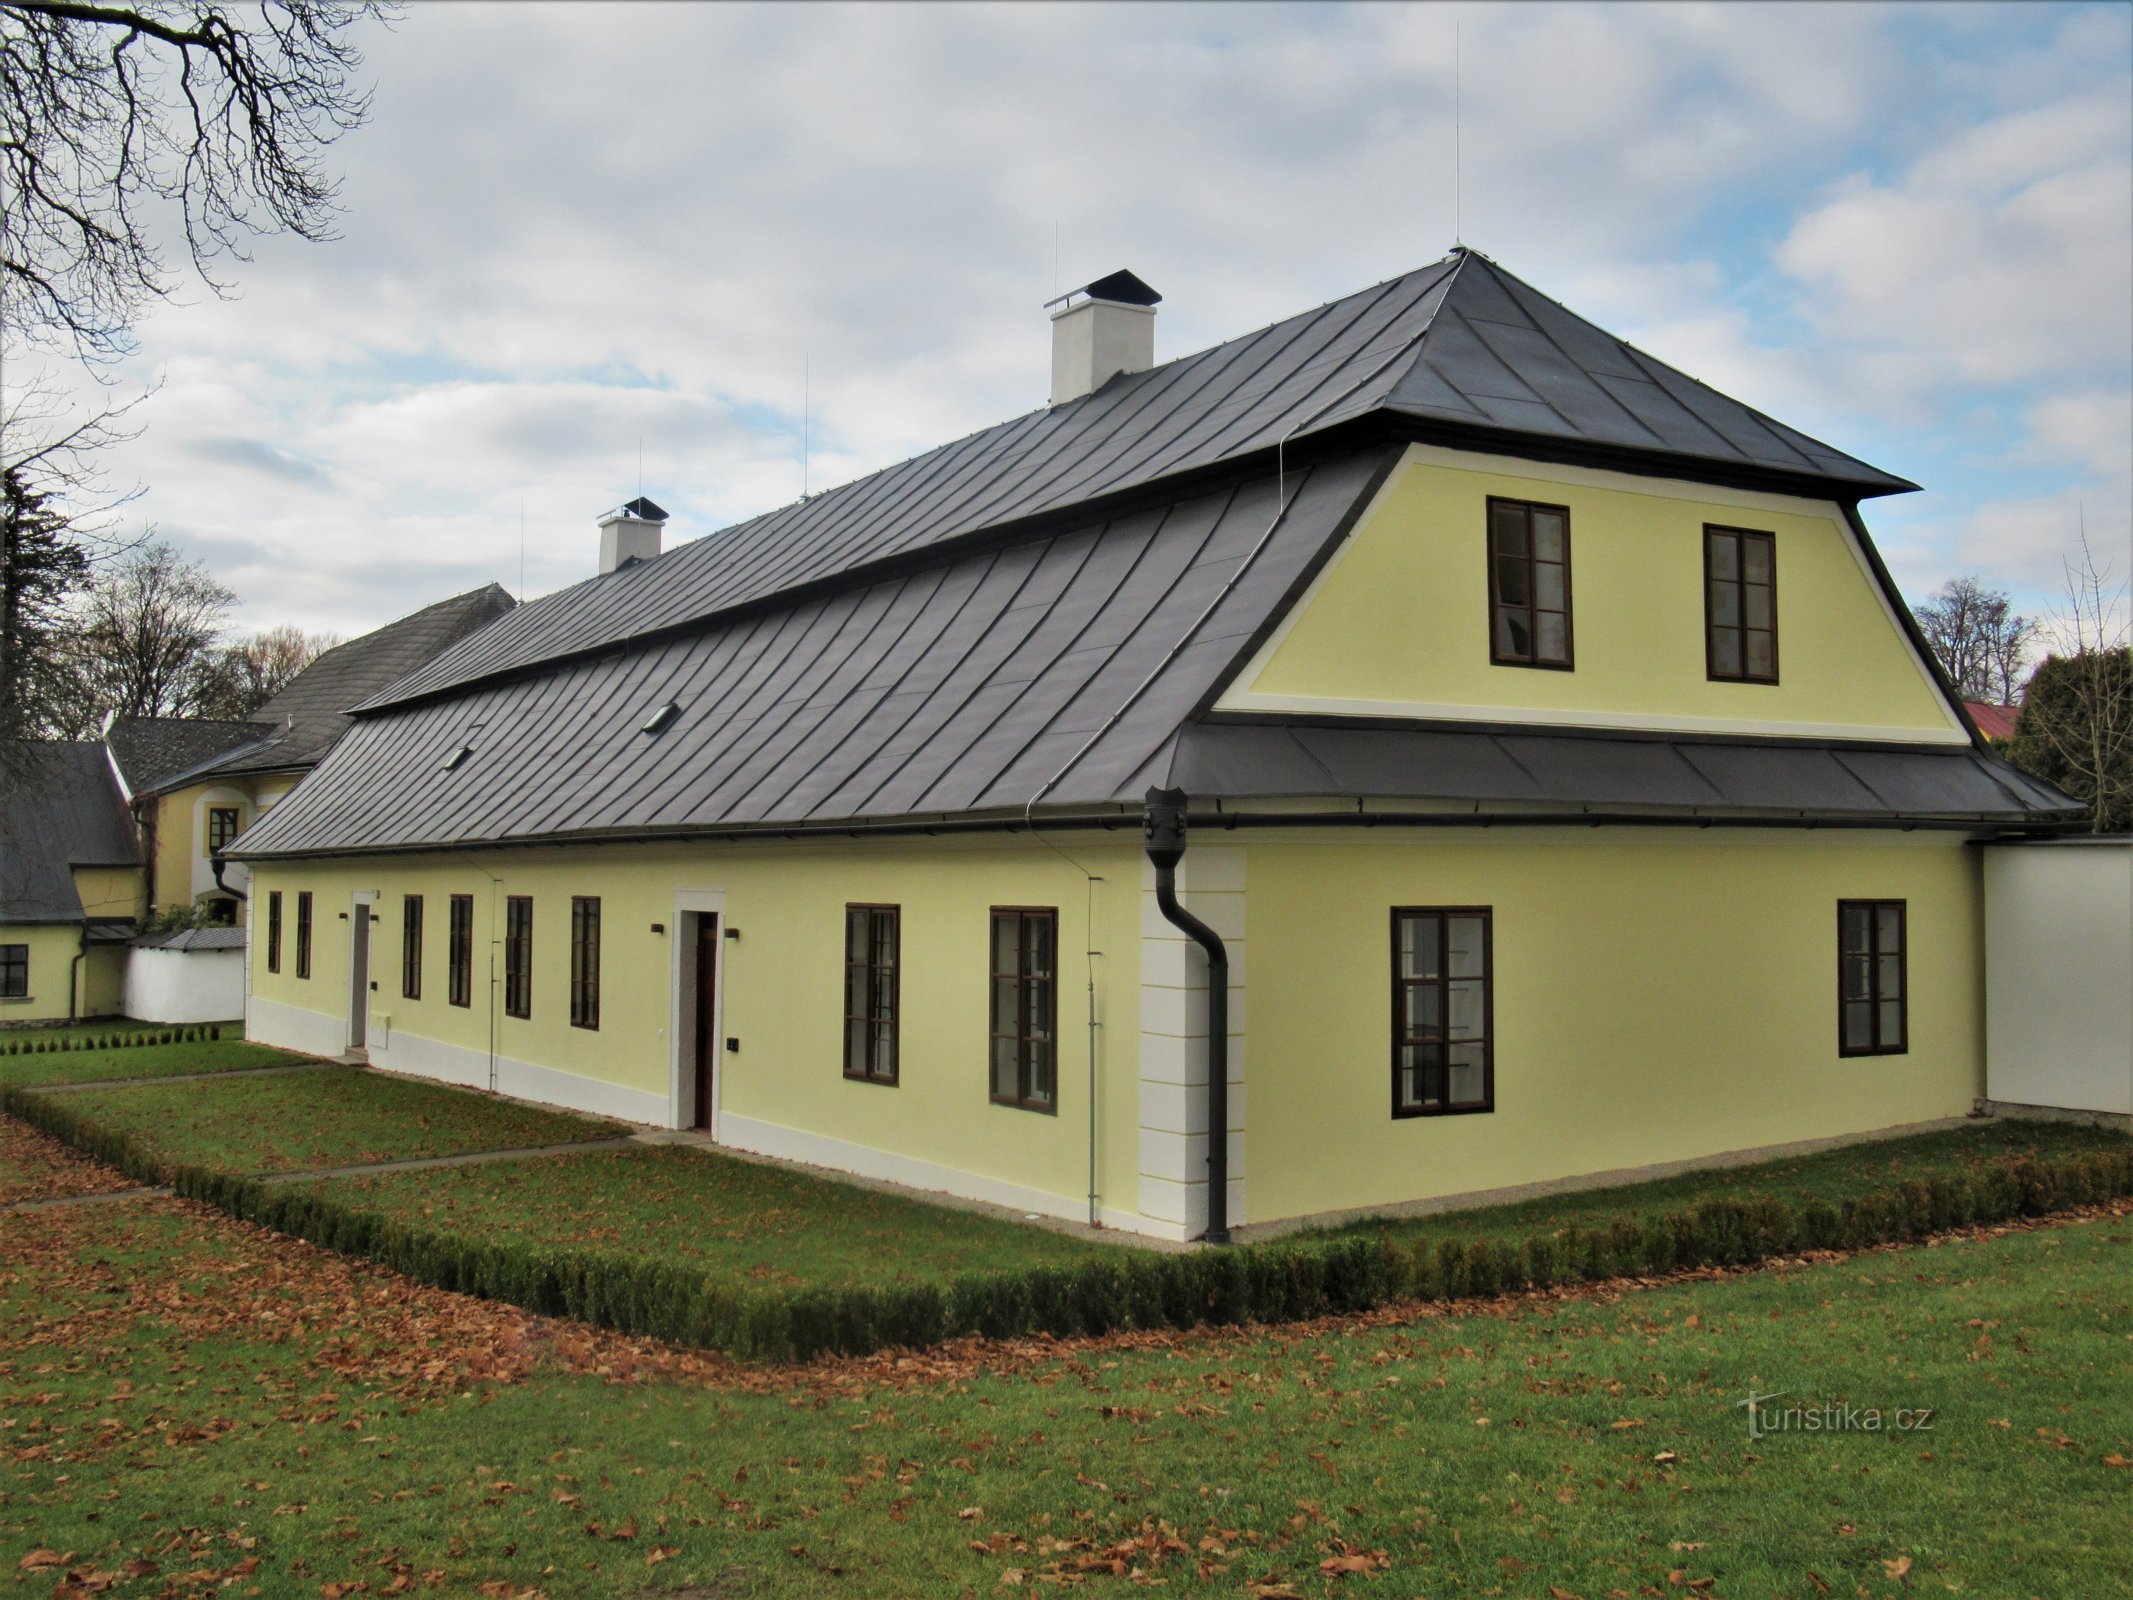 Žďár nad Sázavou - το σπίτι του κηπουρού κοντά στο κάστρο